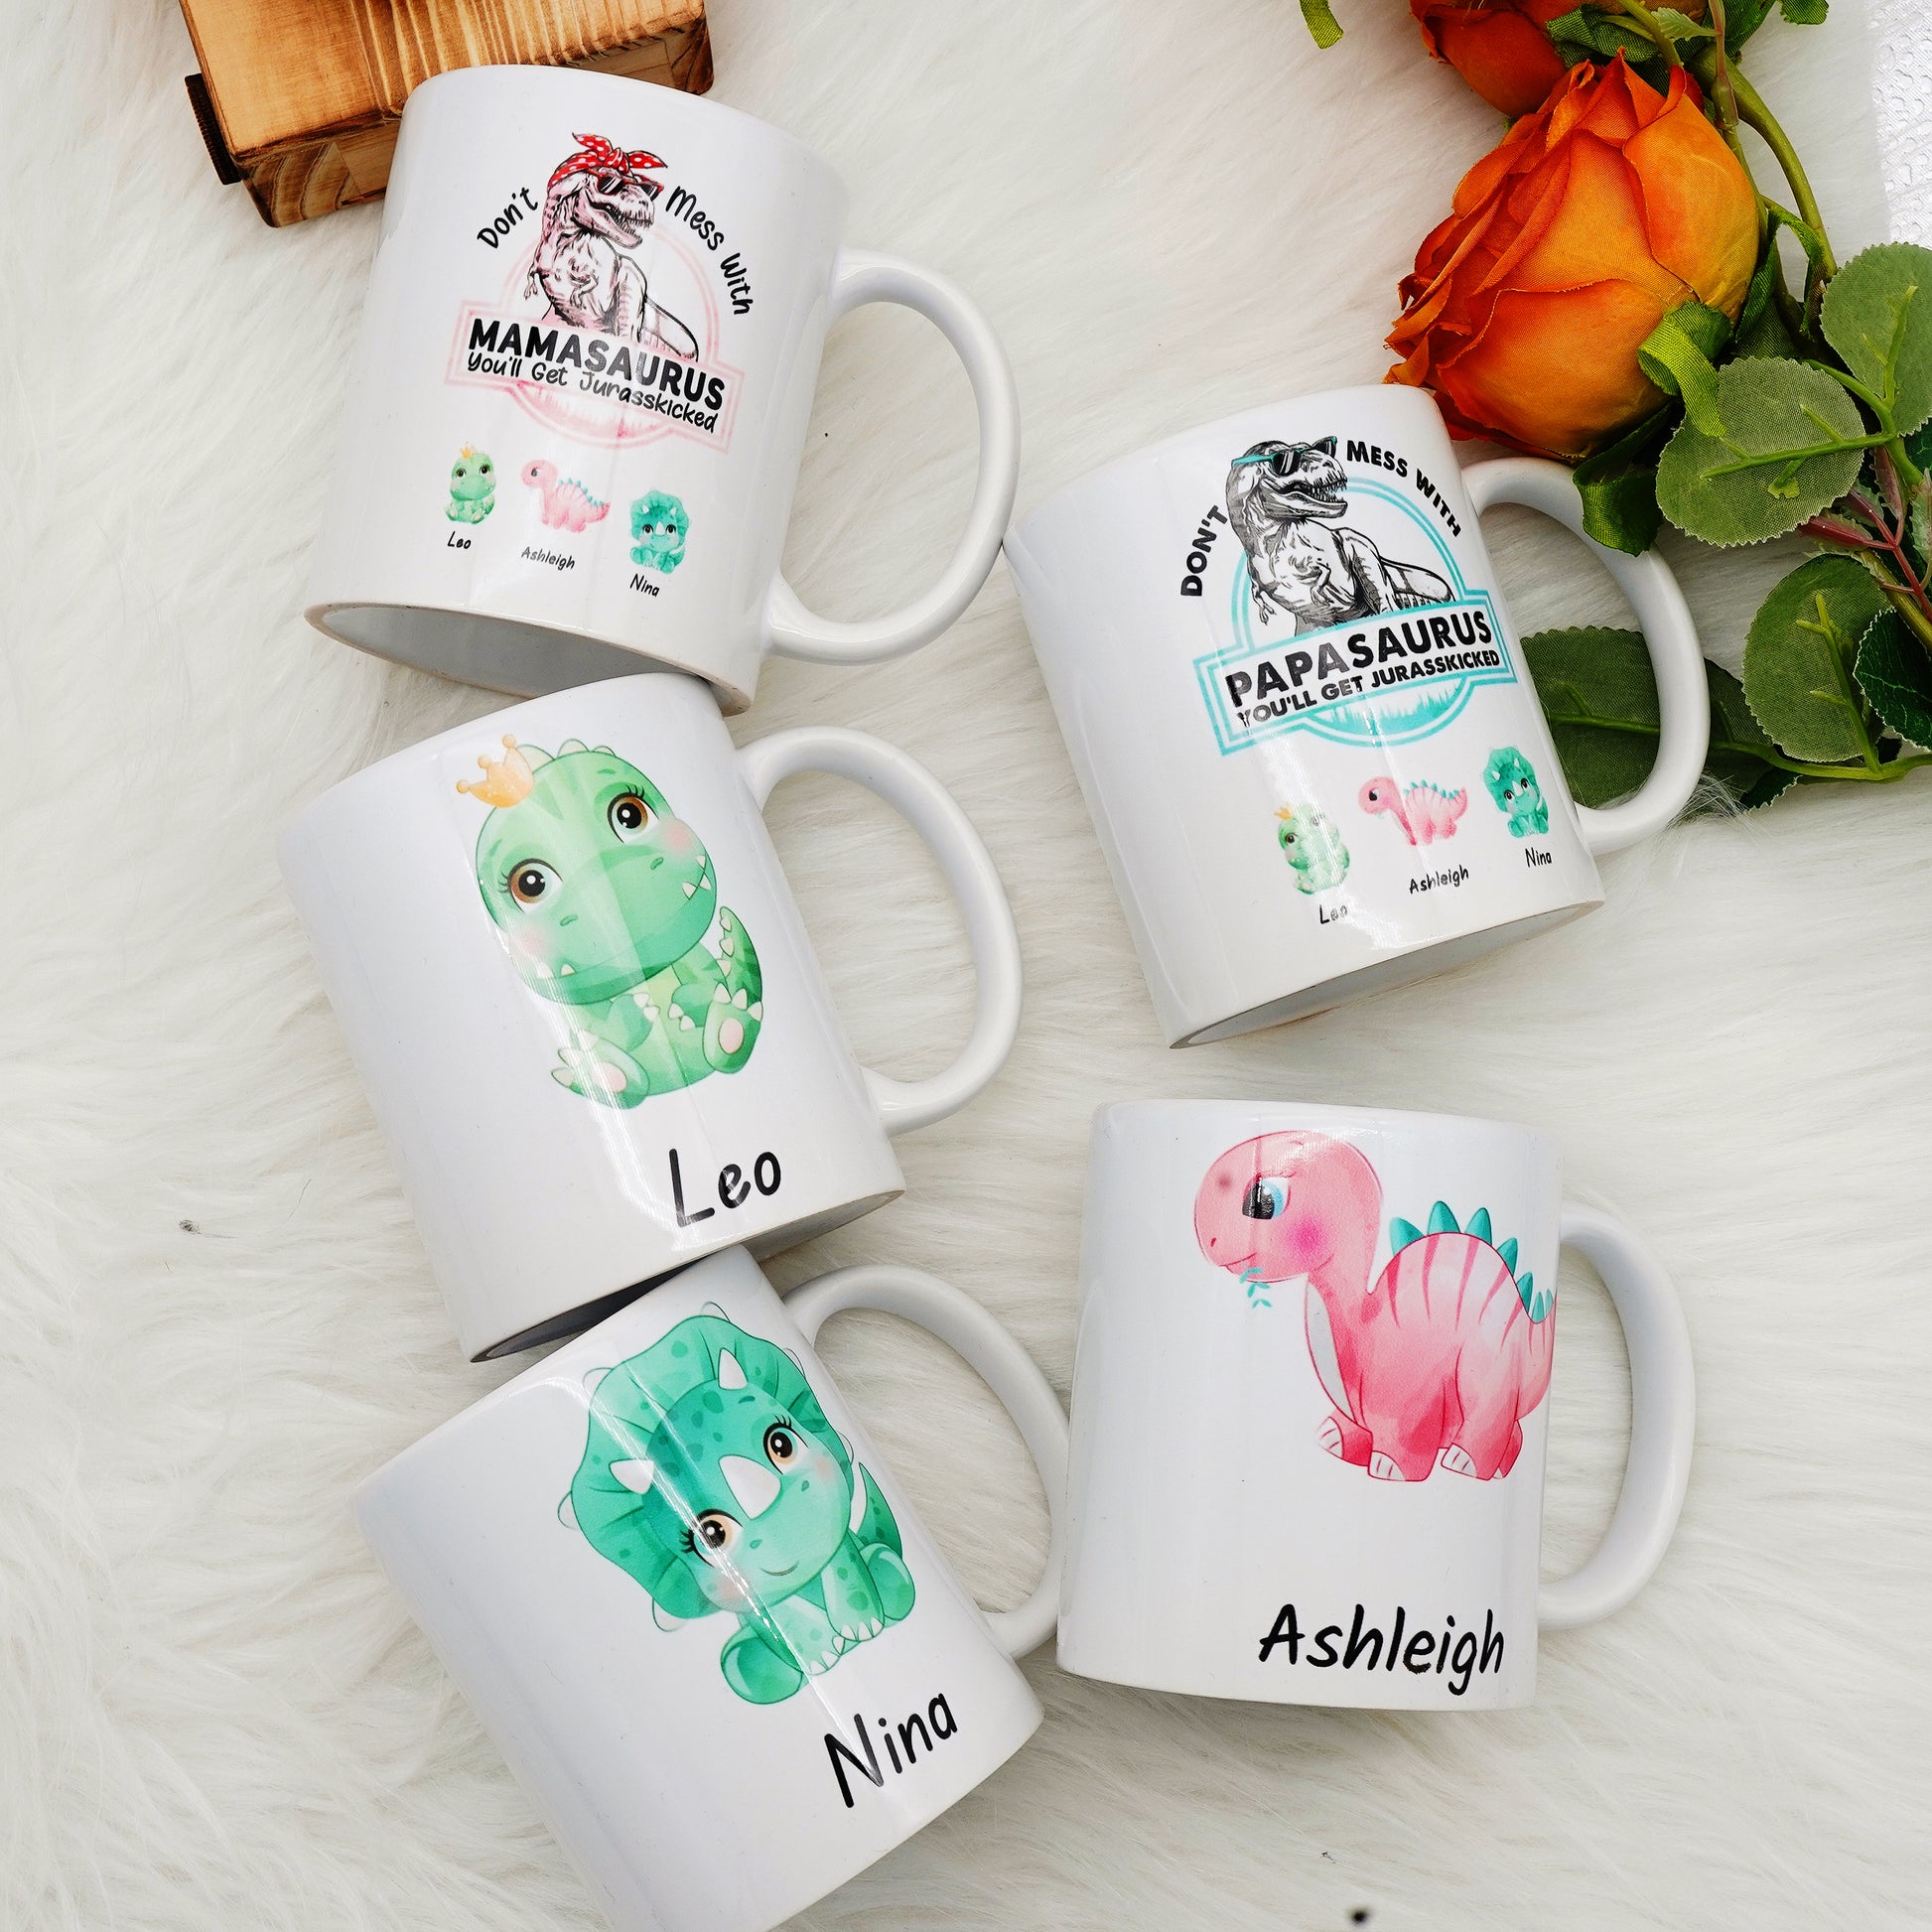 Mamasaurus Mug, Don't Mess with Mamasaurus You'll Get Jurasskicked Coffee Mug, Dinosaur Mug, Dinosaur Mug N Gift for Mom Tired As A Mother, Ceramic